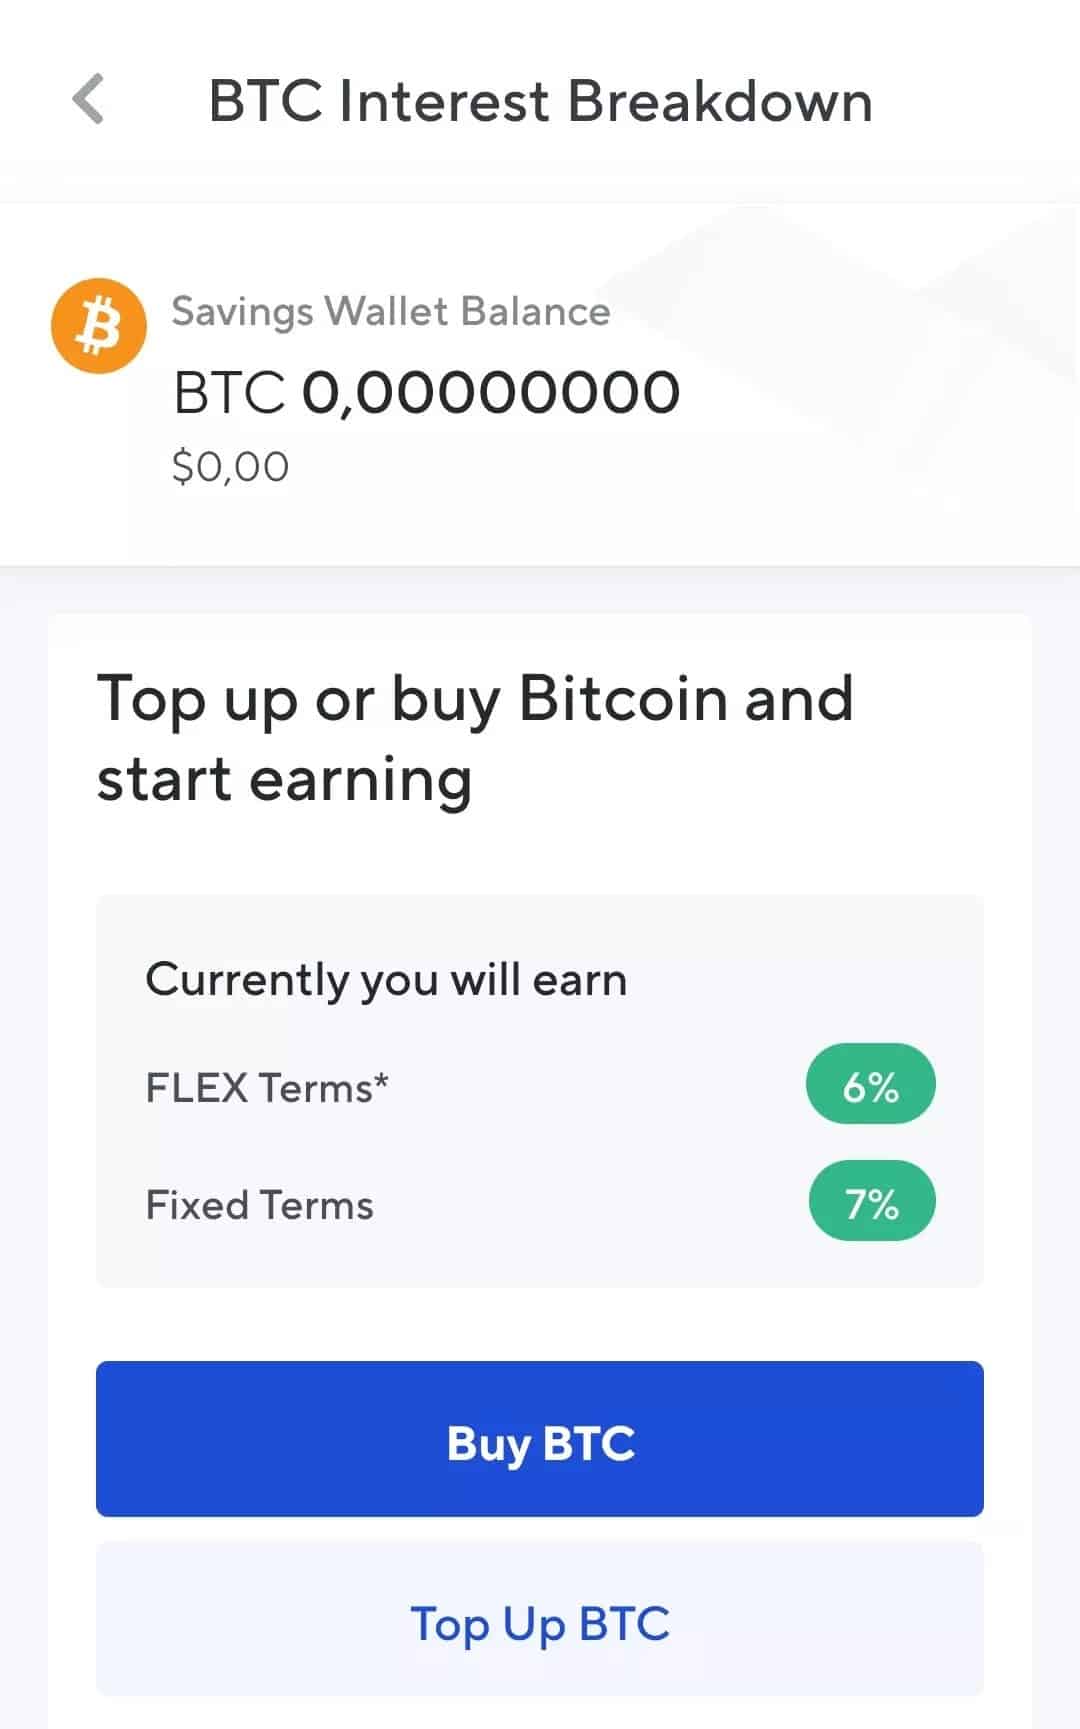 Interesse oferecido pela Nexo no Bitcoin